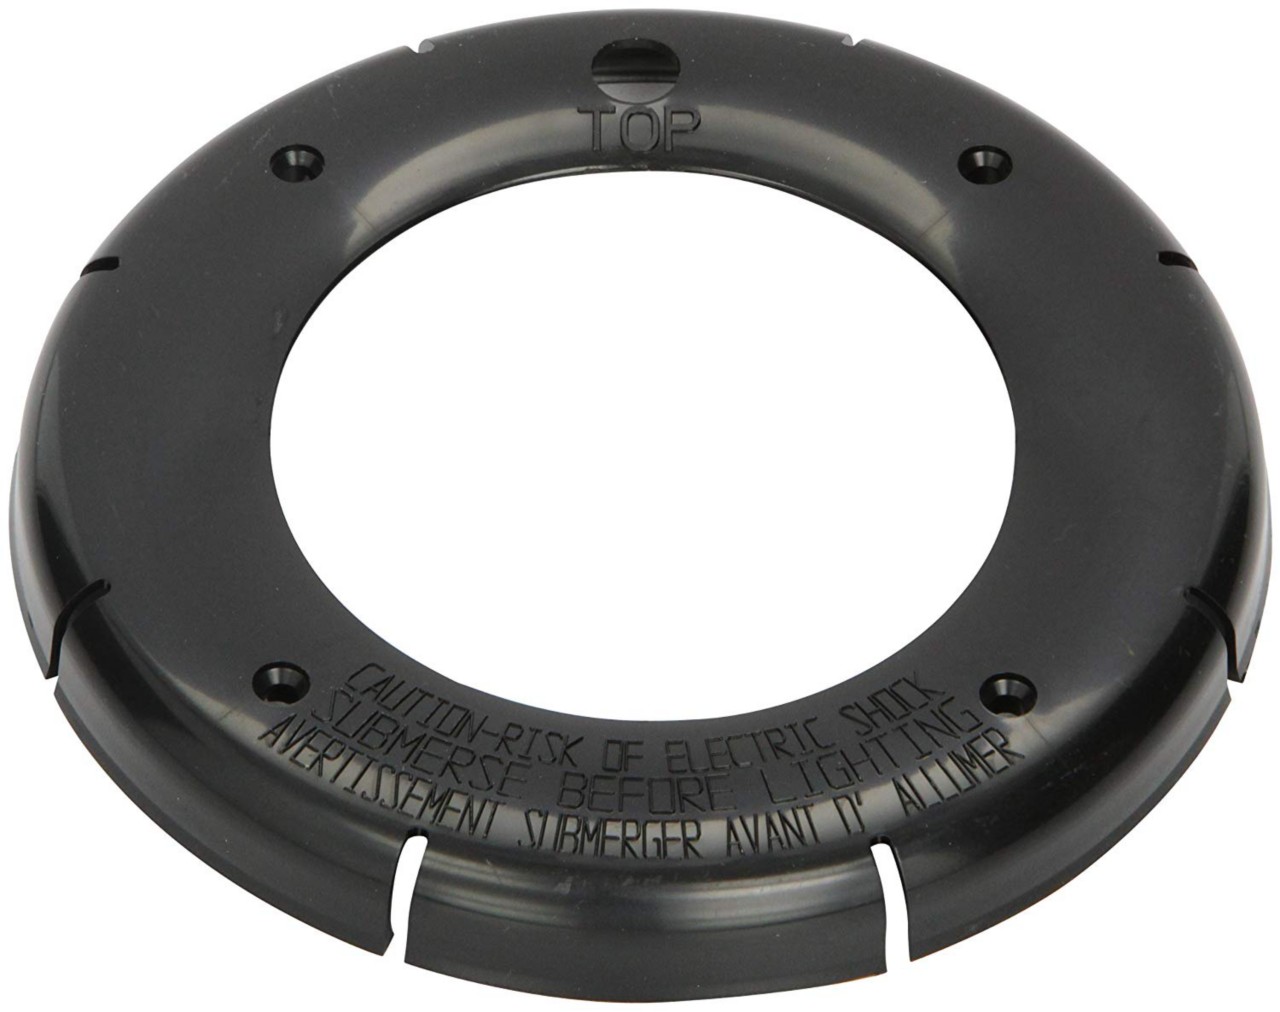 Sealing ring in black